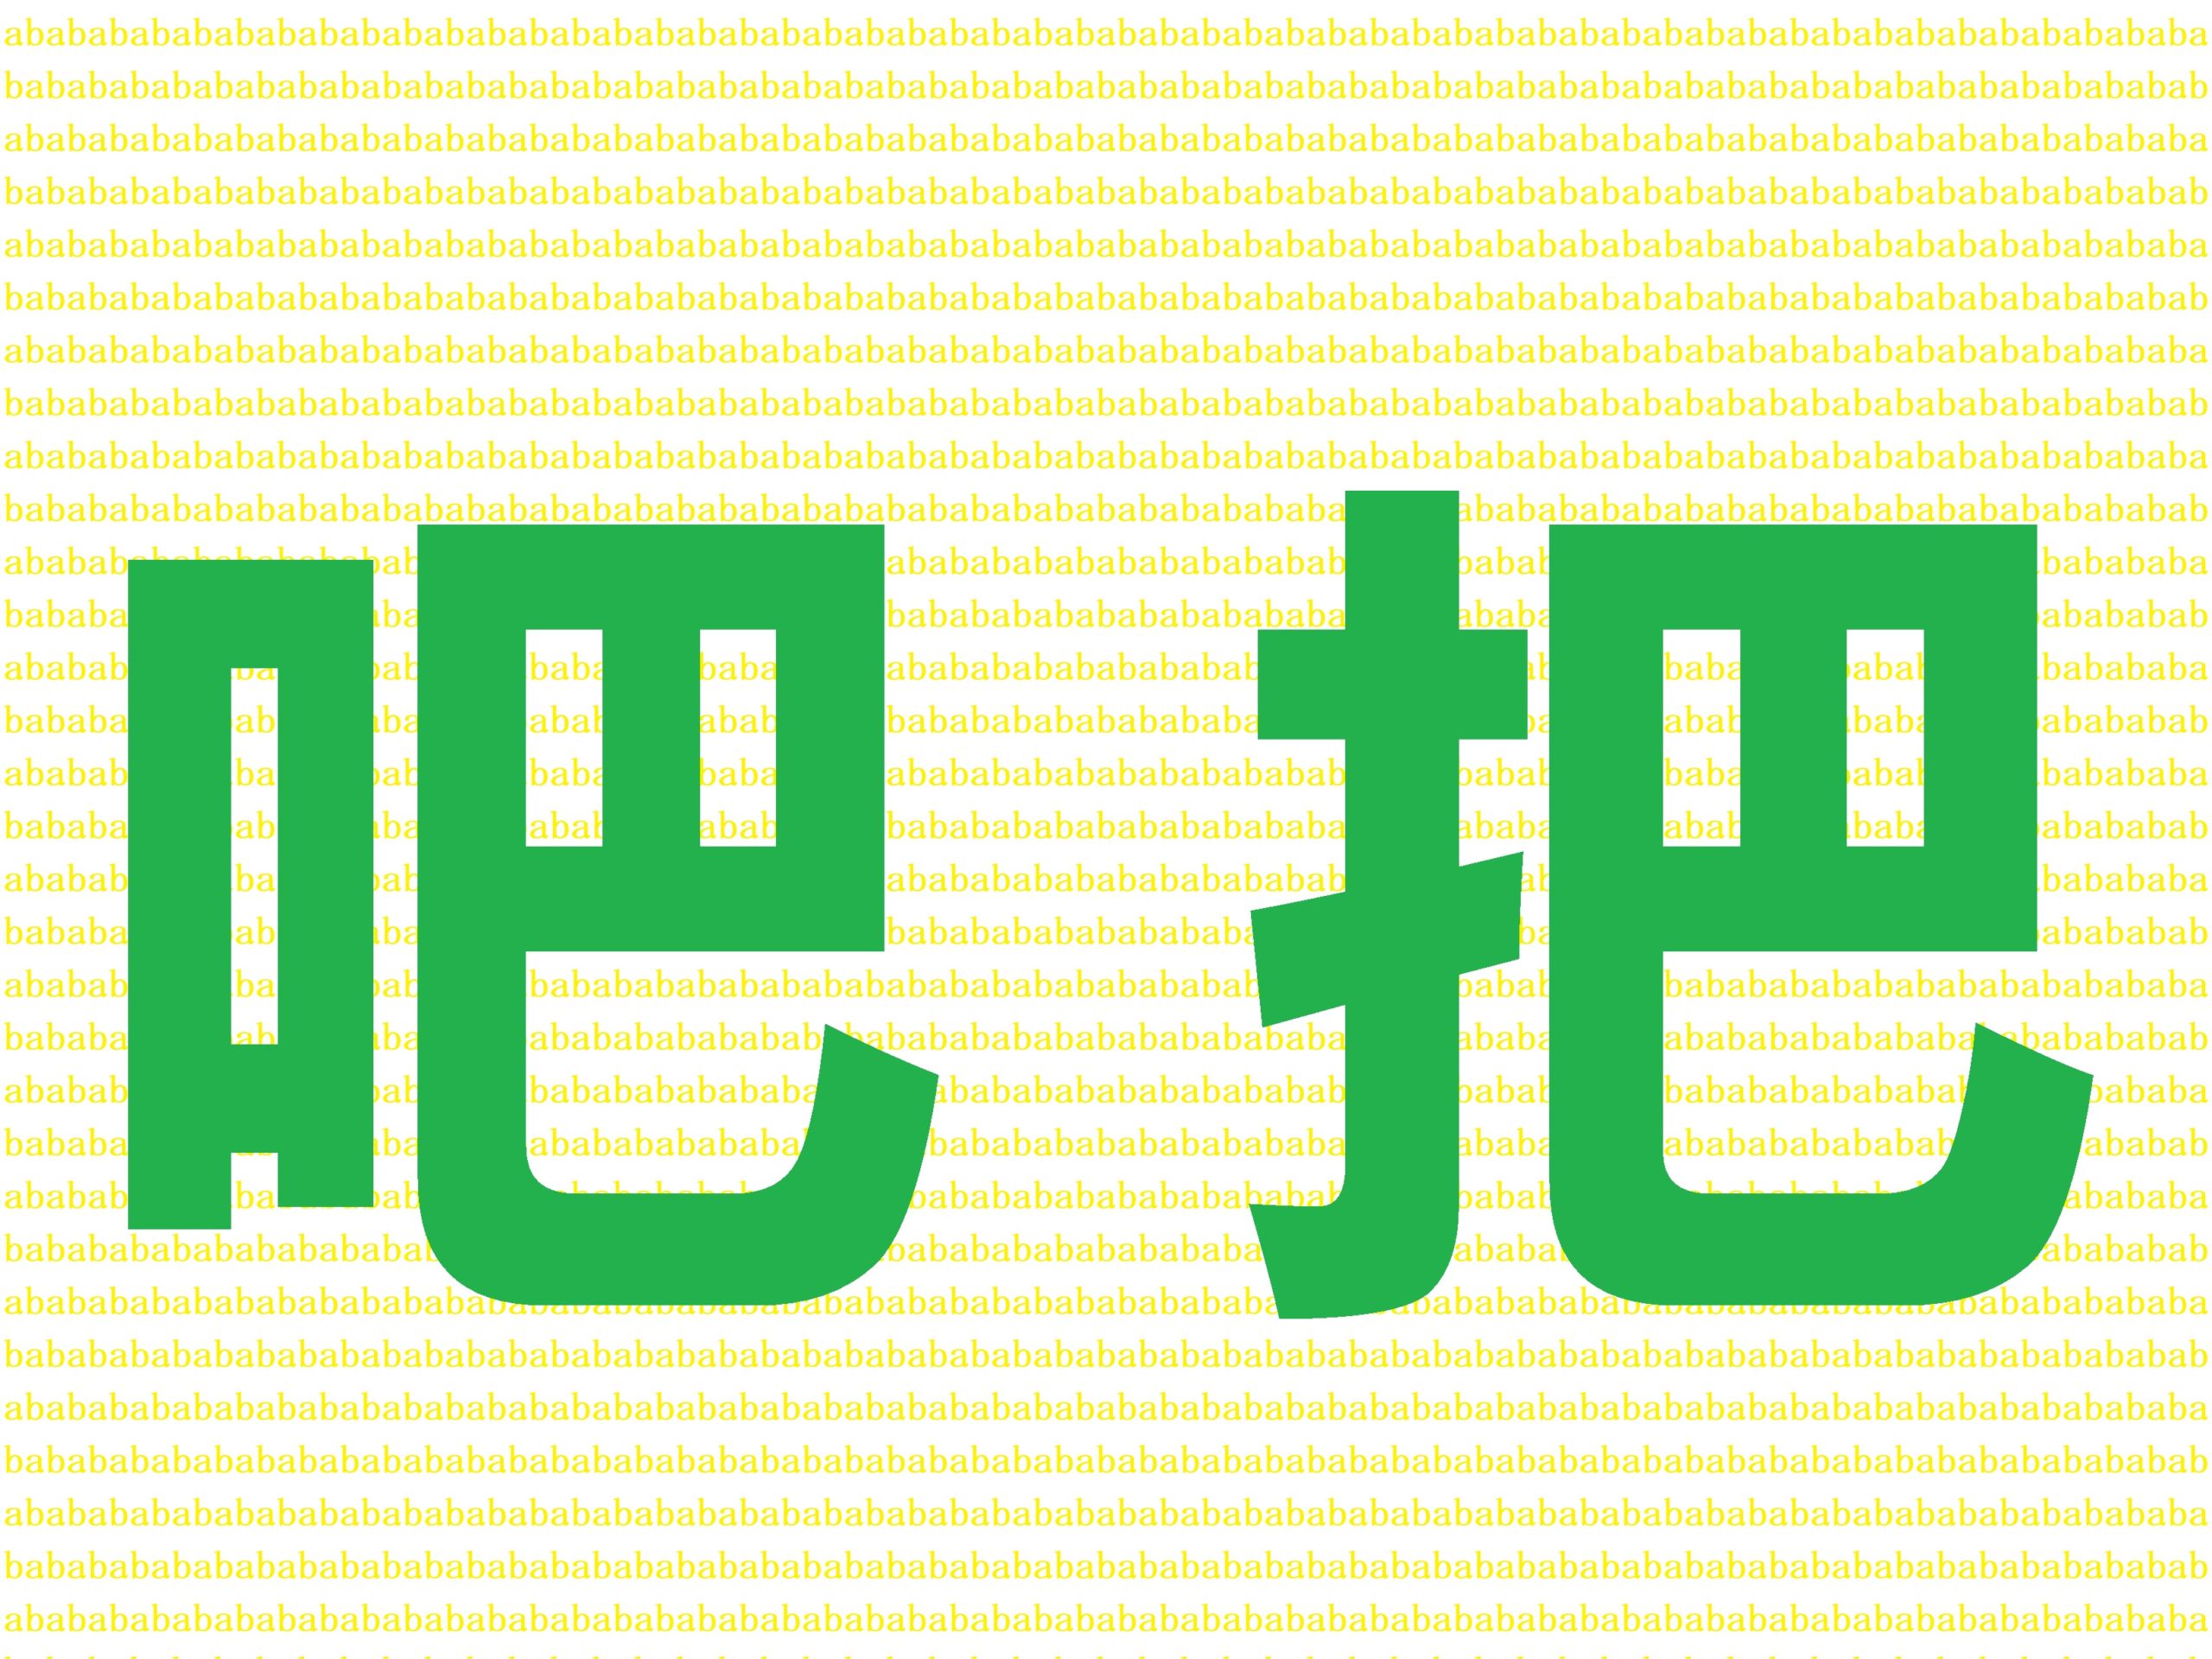 中国語で バ Ba と発音する２つの漢字 把 吧 の意味と用法